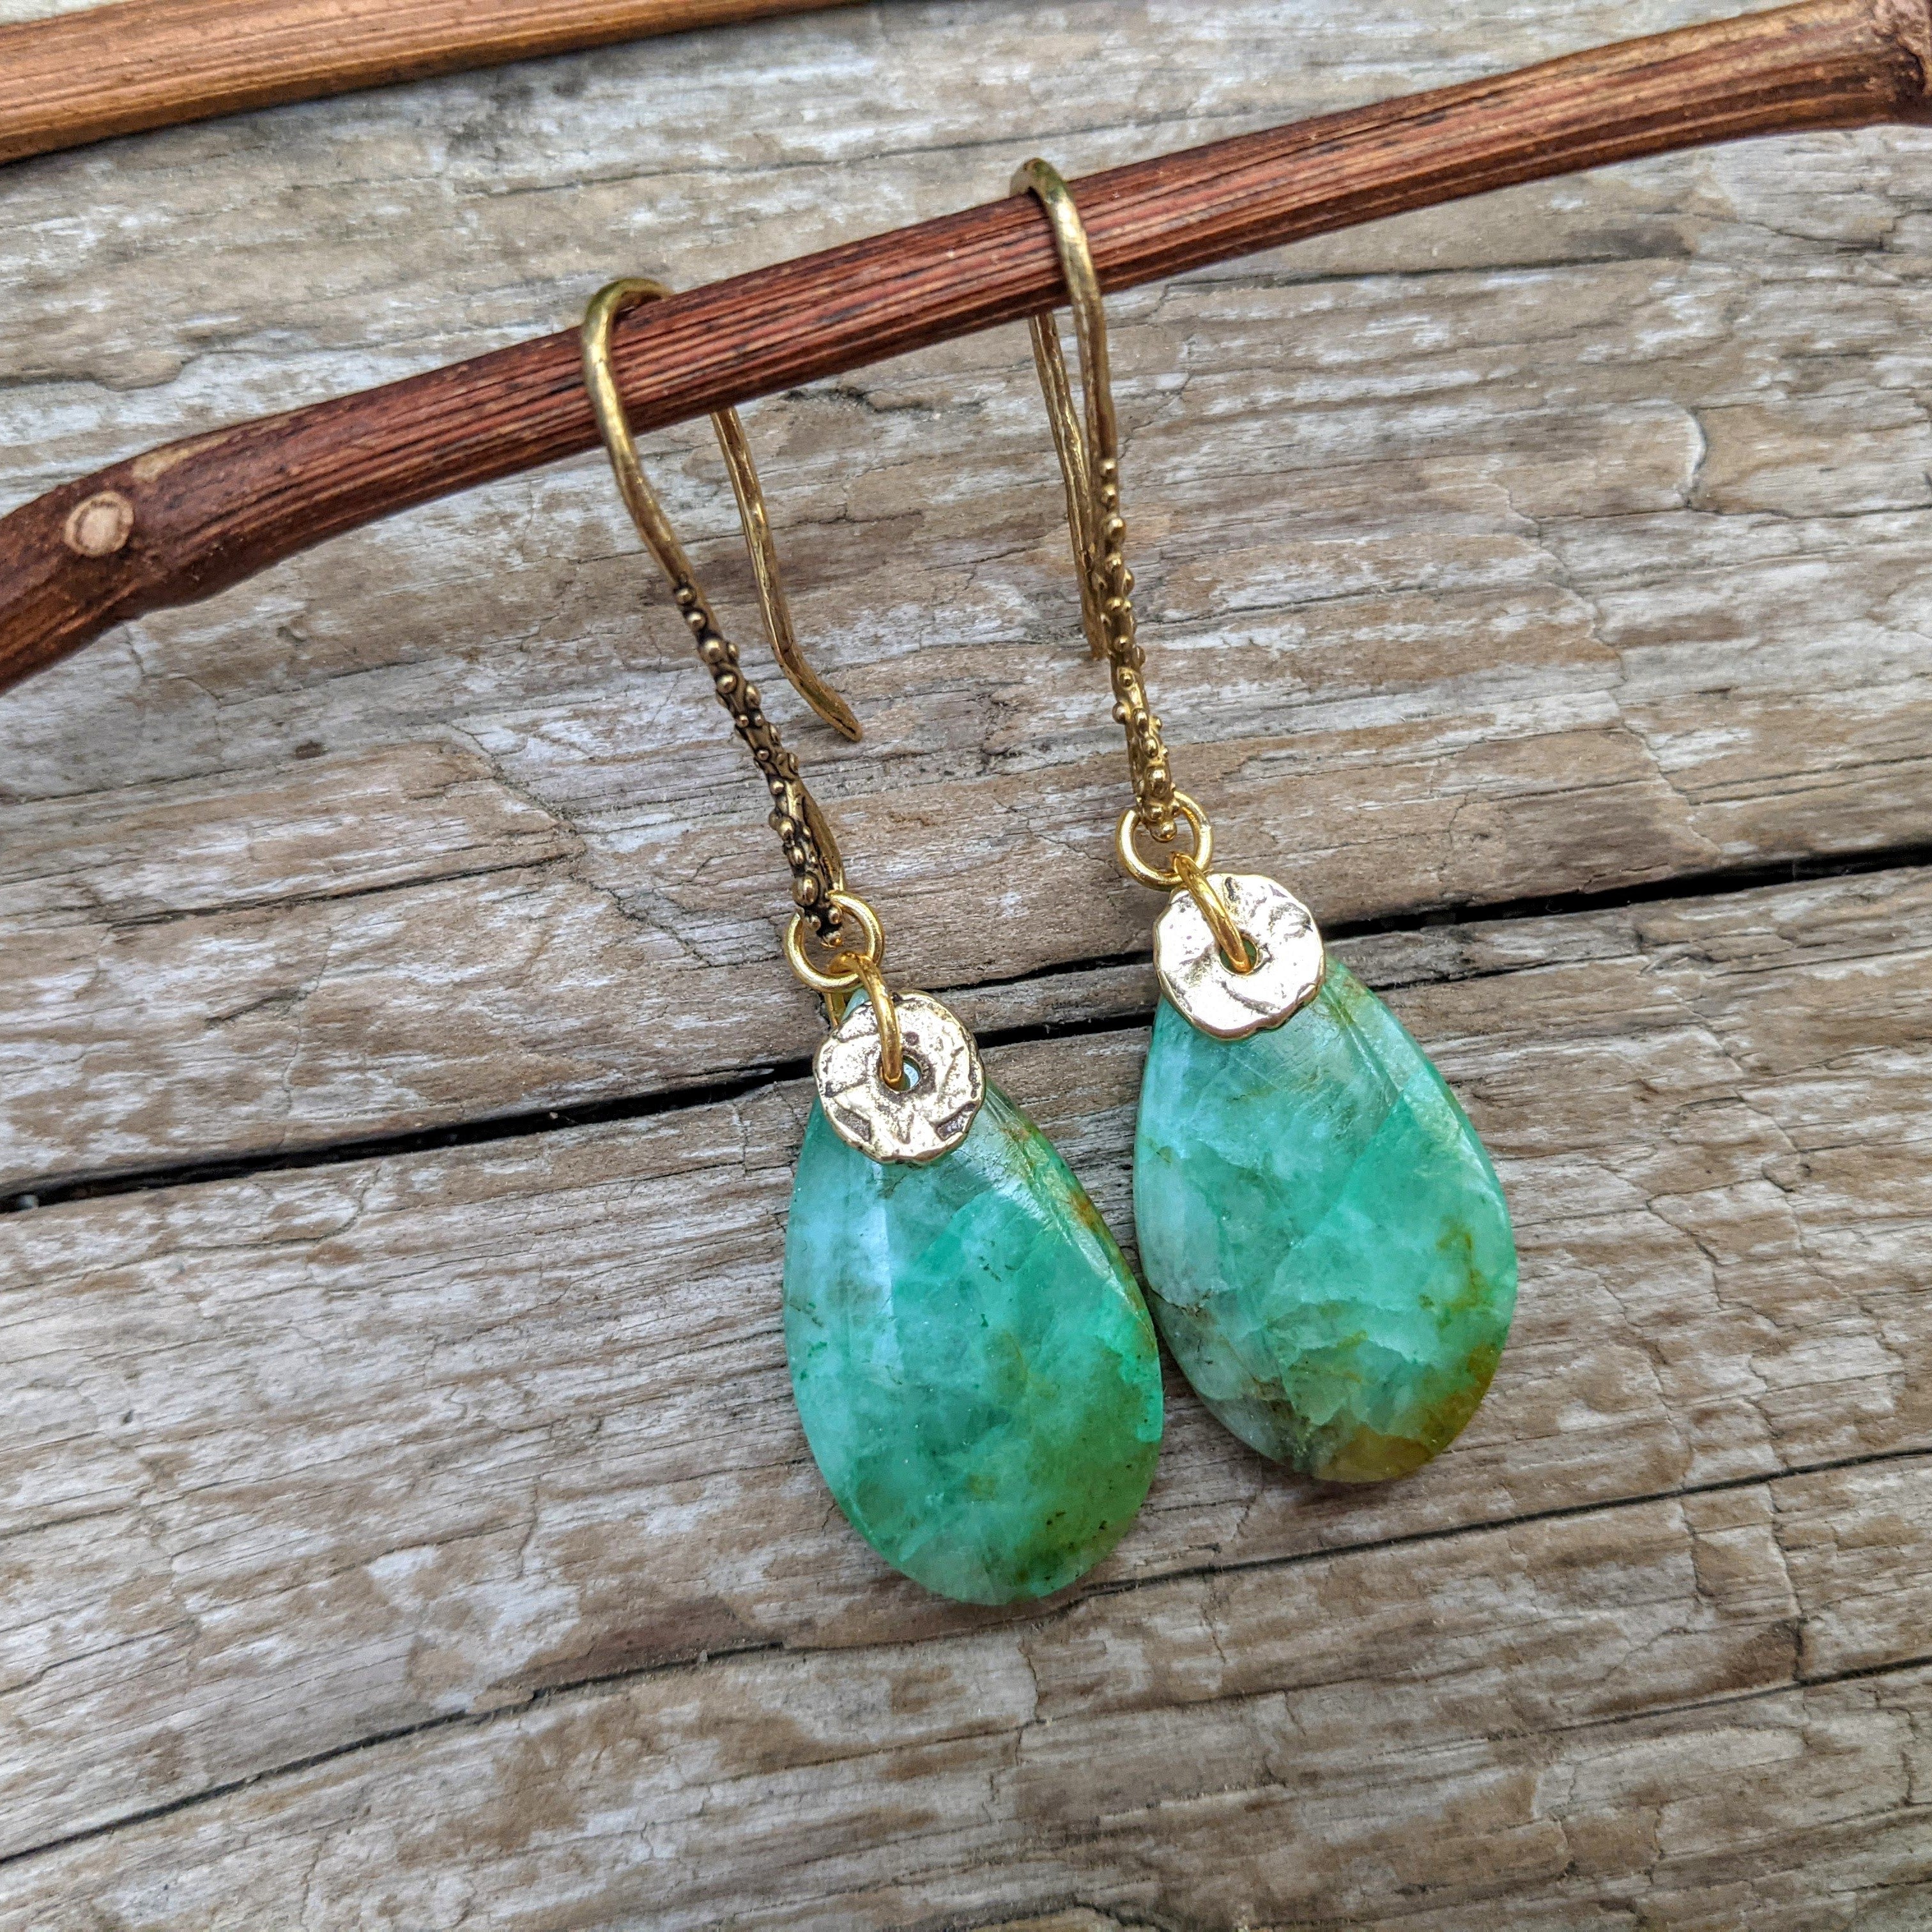 Chrysocolla green earrings, boho earrings, bohemian style earrings, dangle gemstone earrings, organic earrings. Handcrafted by Aurora Creative Jewellery.